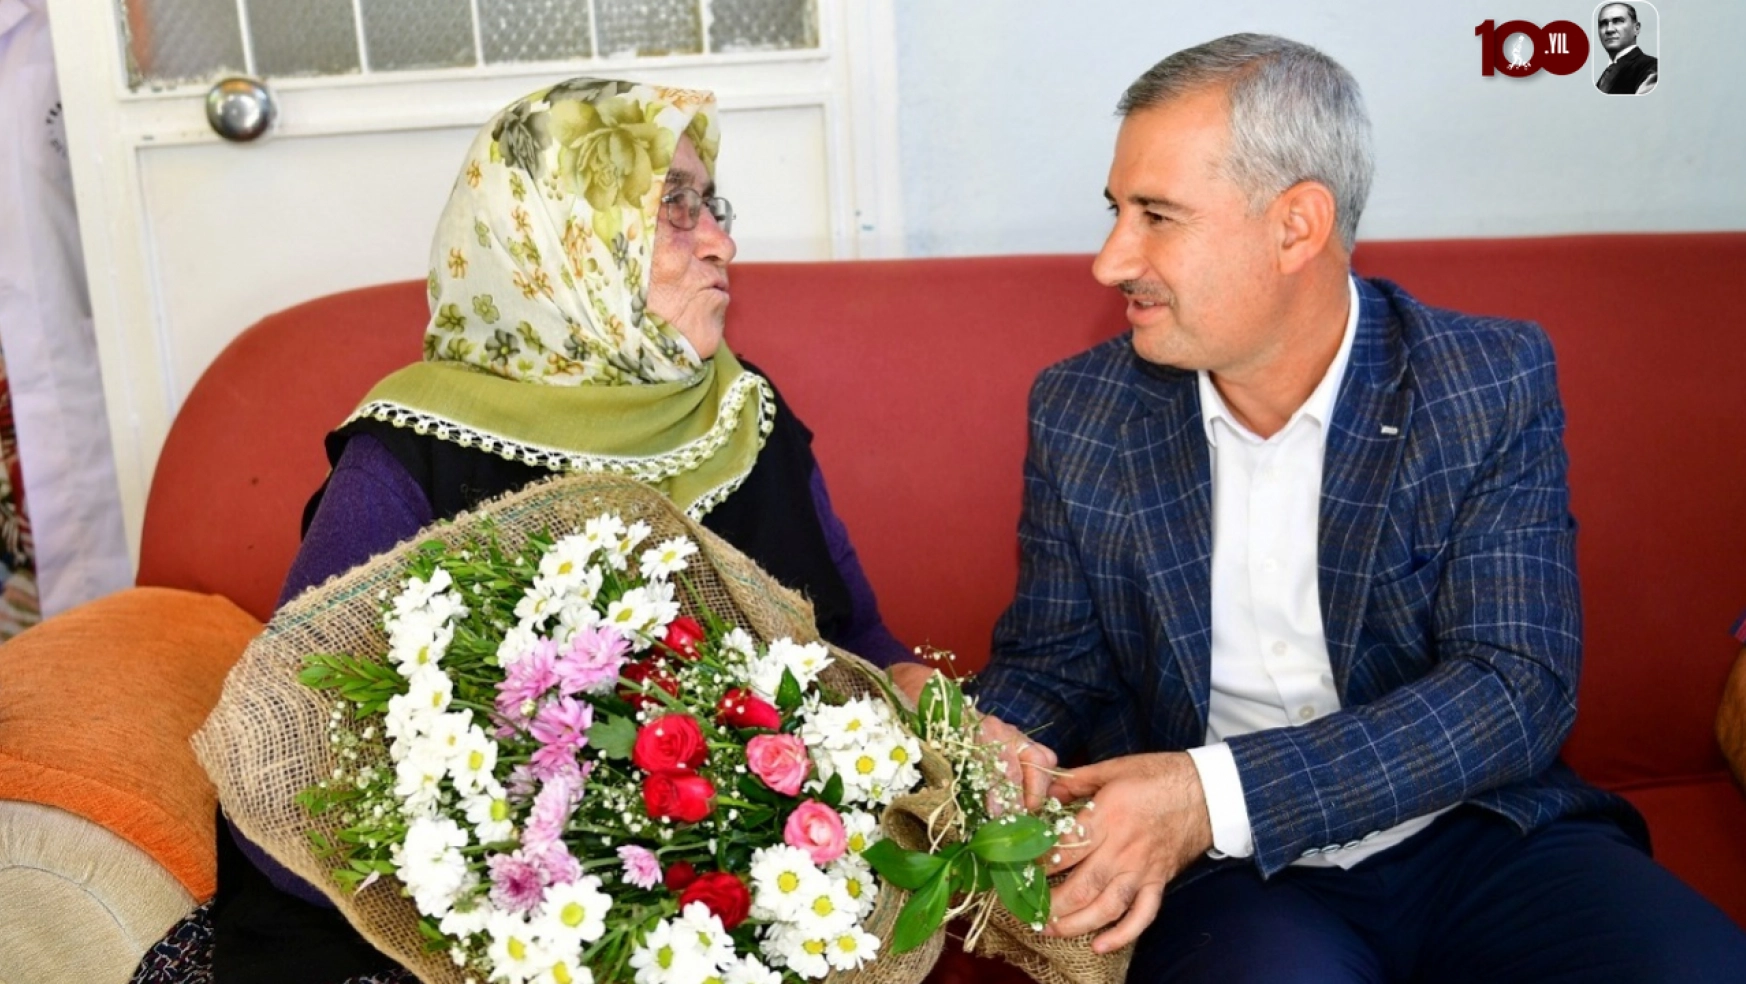 Başkan Çınar, Kadına Şiddet, İnsanlığa Yapılan En Büyük İhanettir